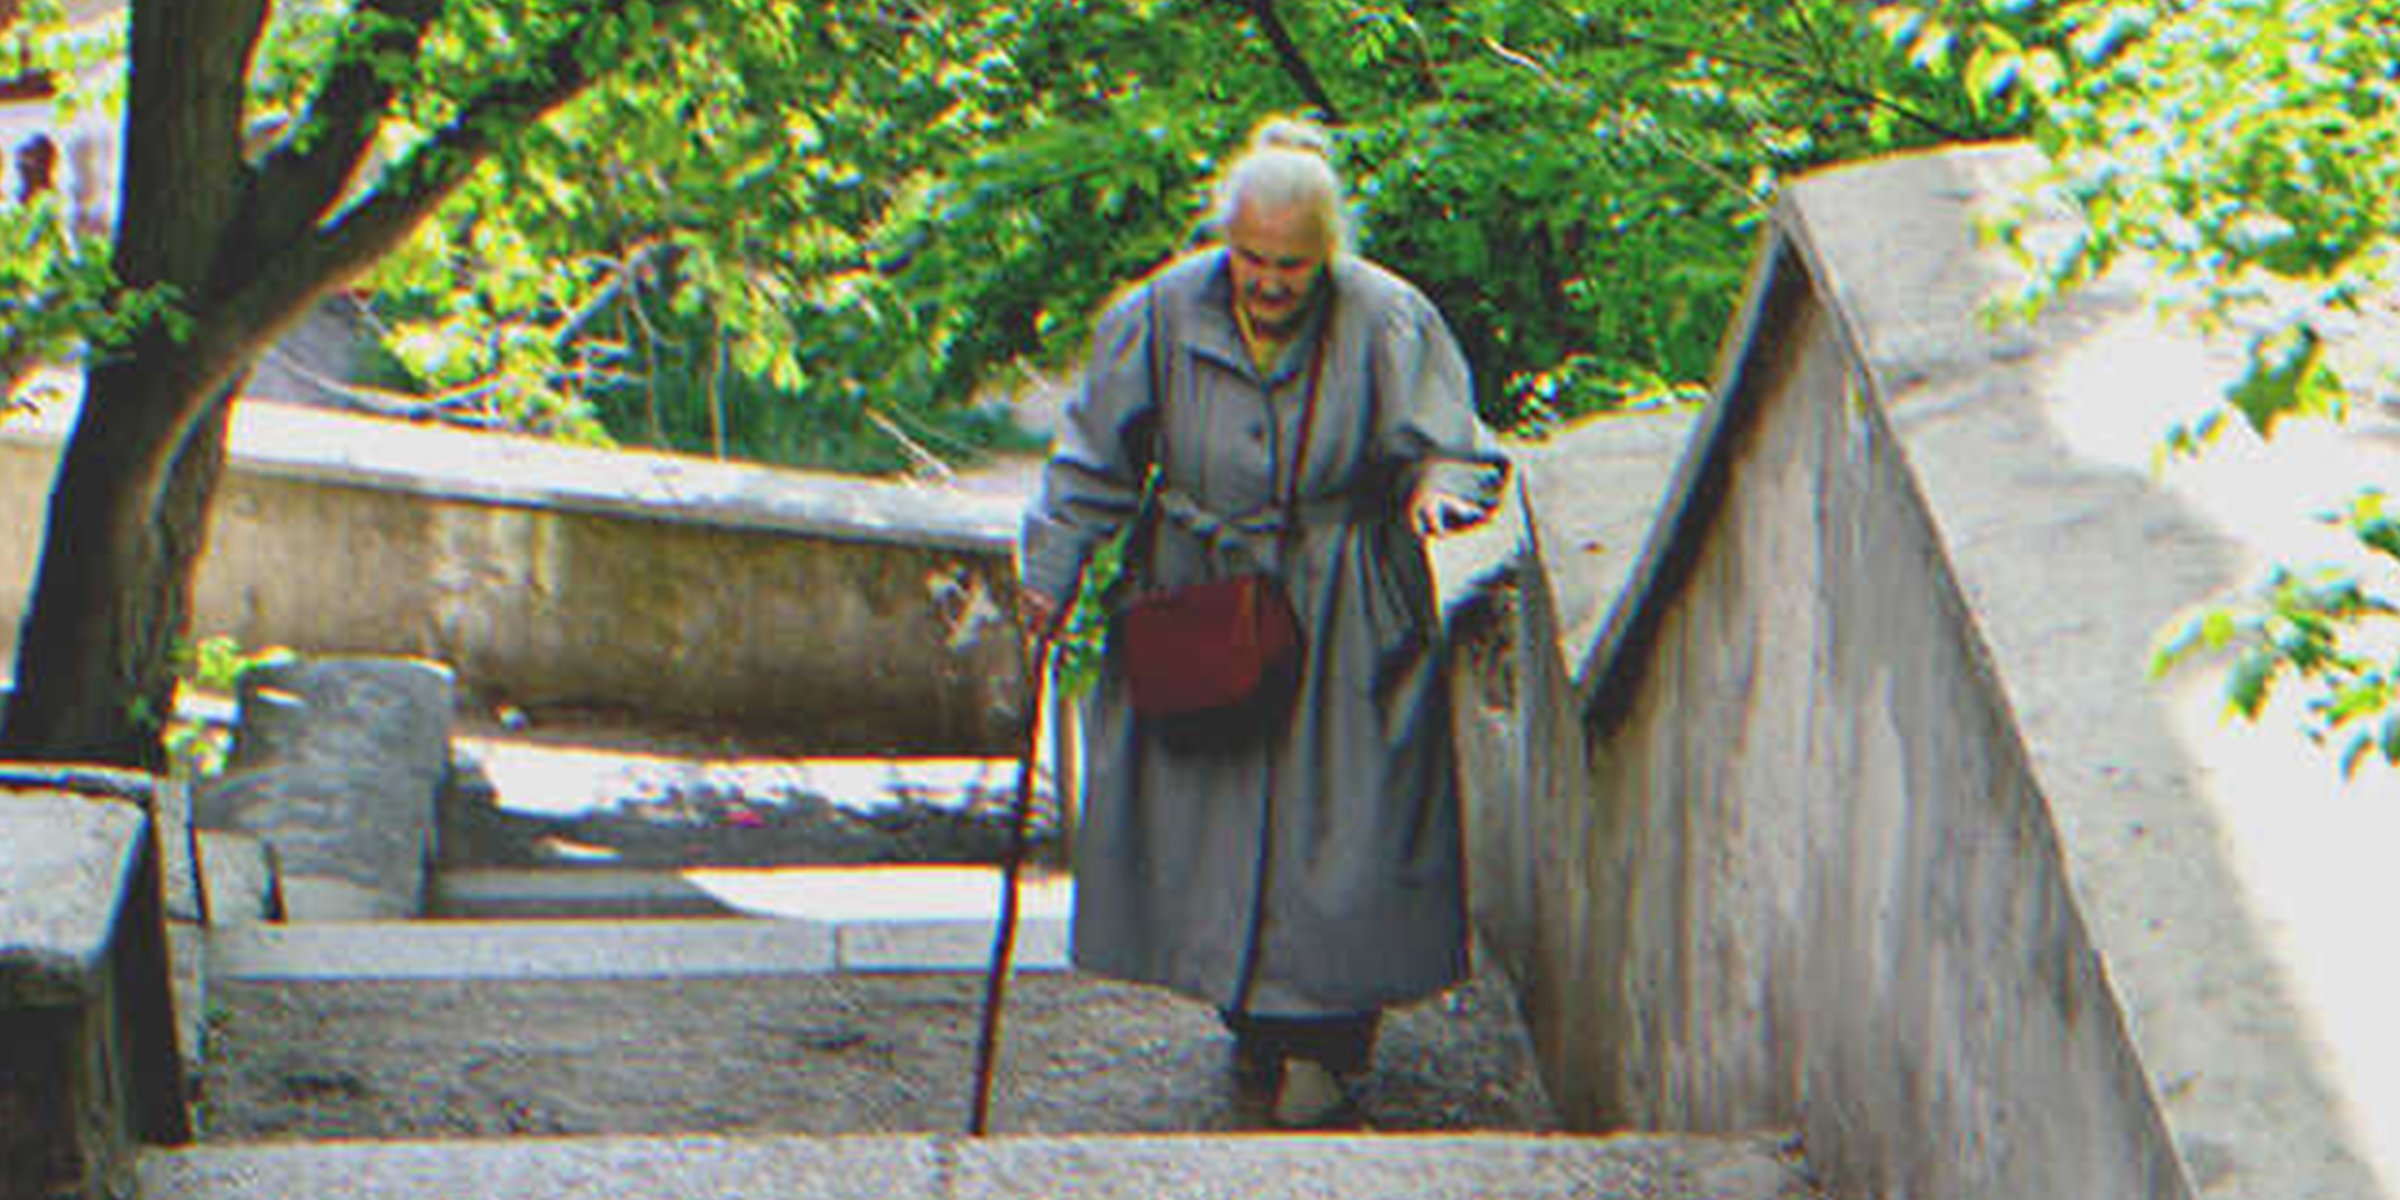 Una mujer mayor subiendo escaleras en un parque | Foto: Shutterstock